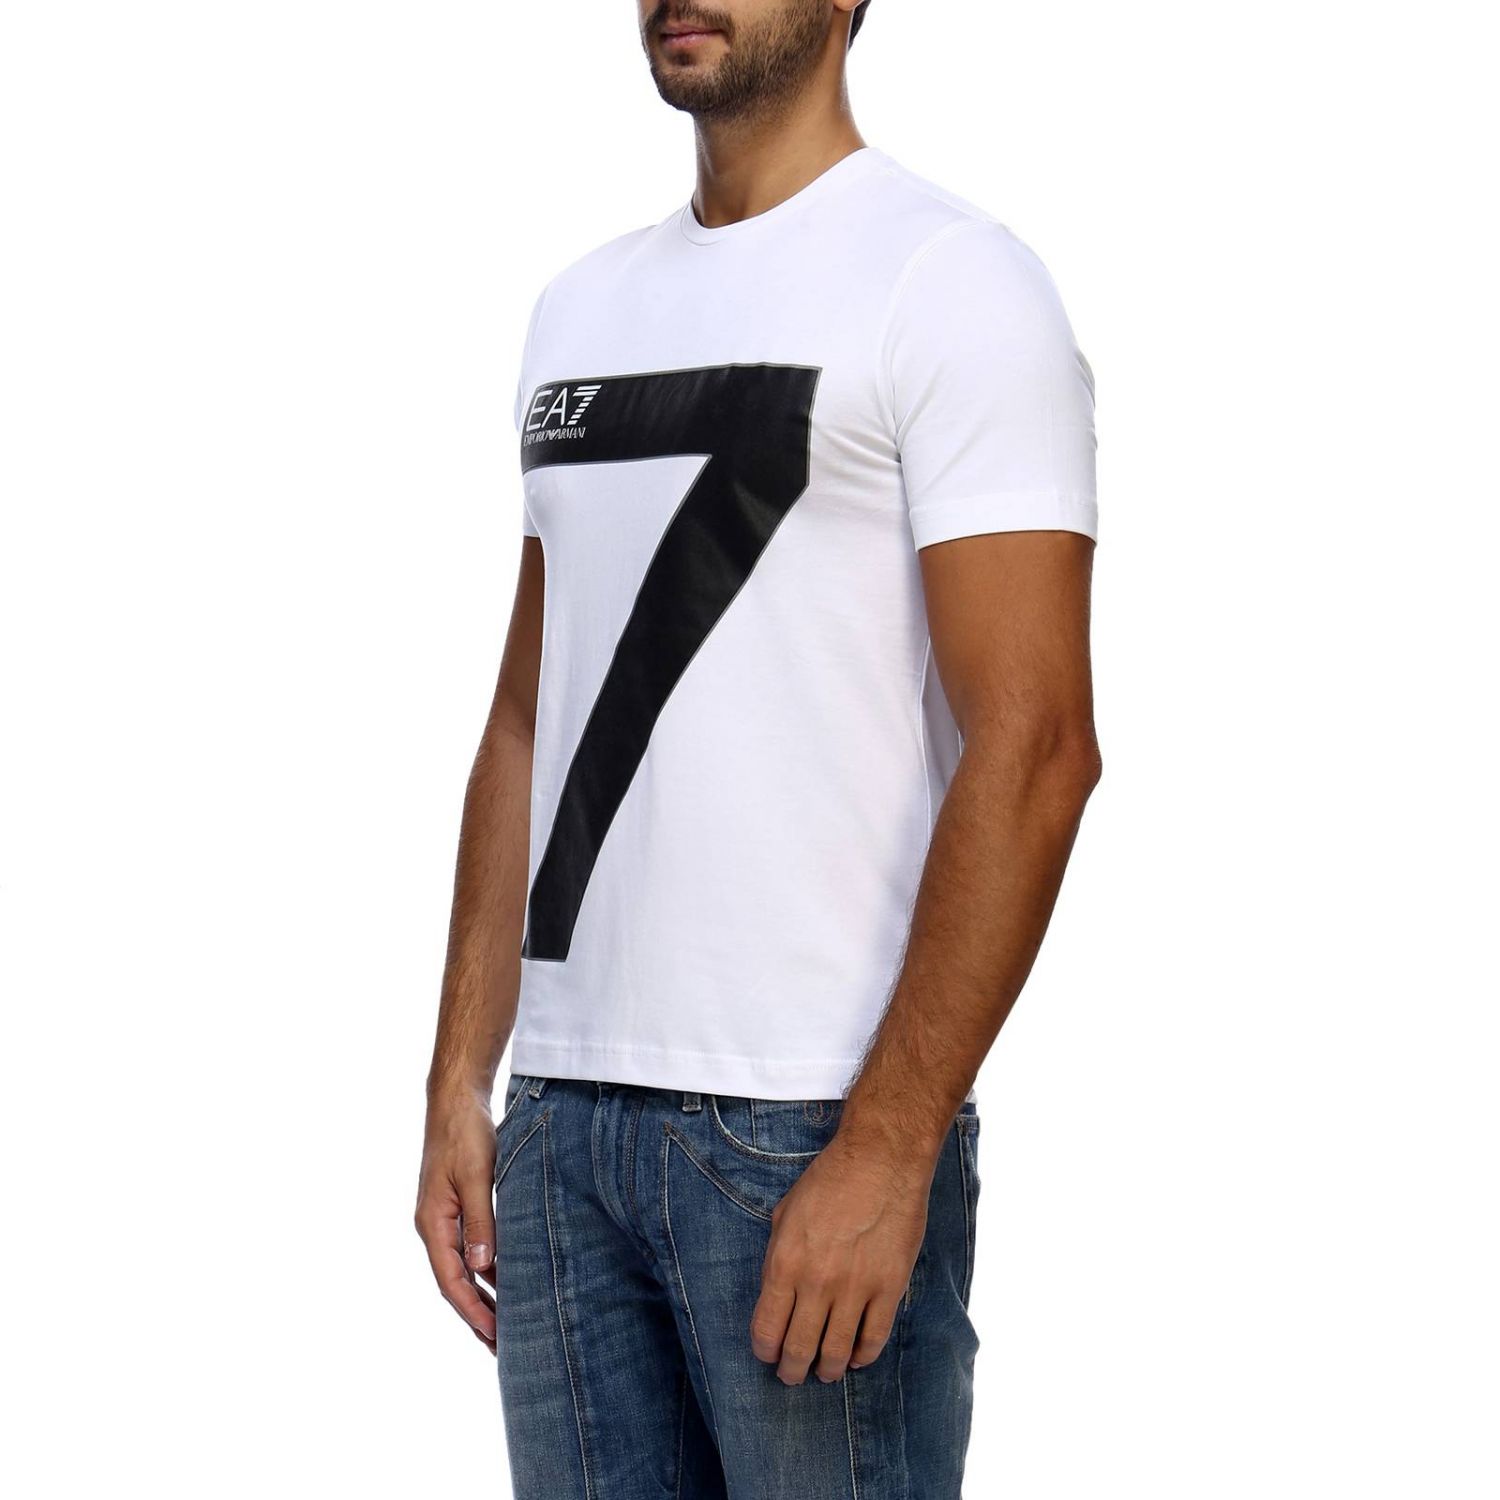 Ea7 Outlet: T-shirt men | T-Shirt Ea7 Men White | T-Shirt Ea7 6ZPT31 ...